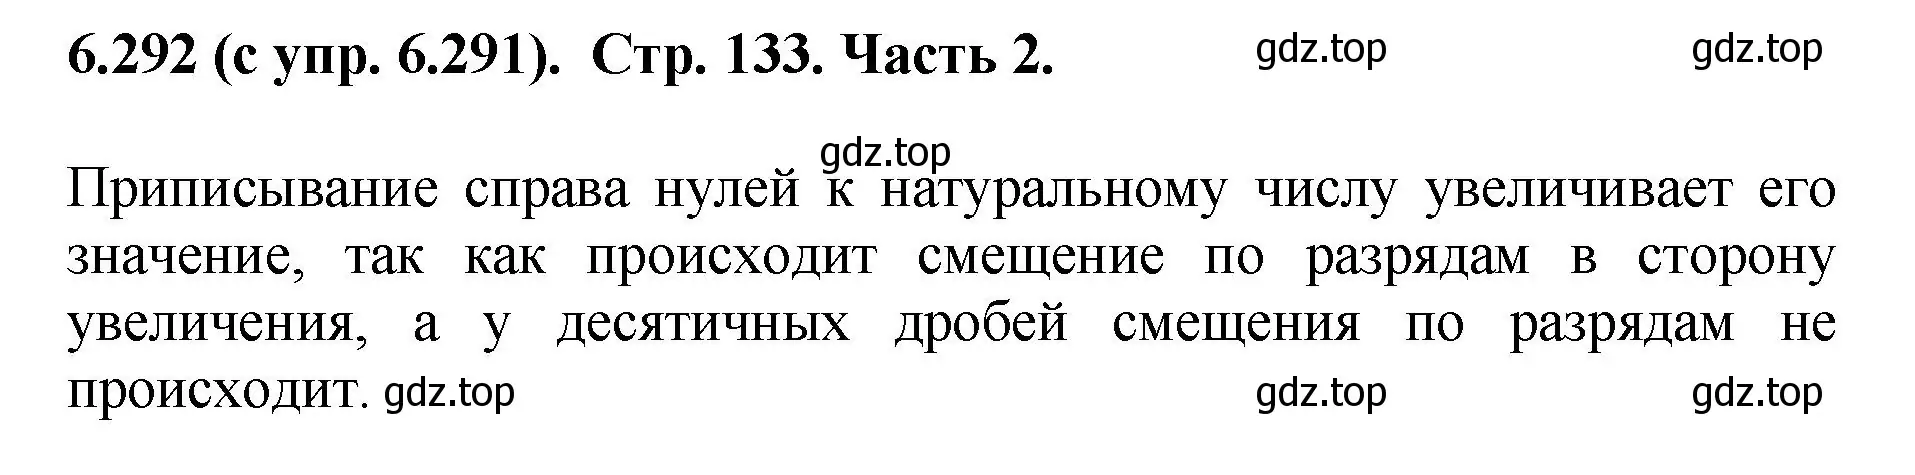 Решение номер 6.292 (страница 133) гдз по математике 5 класс Виленкин, Жохов, учебник 2 часть